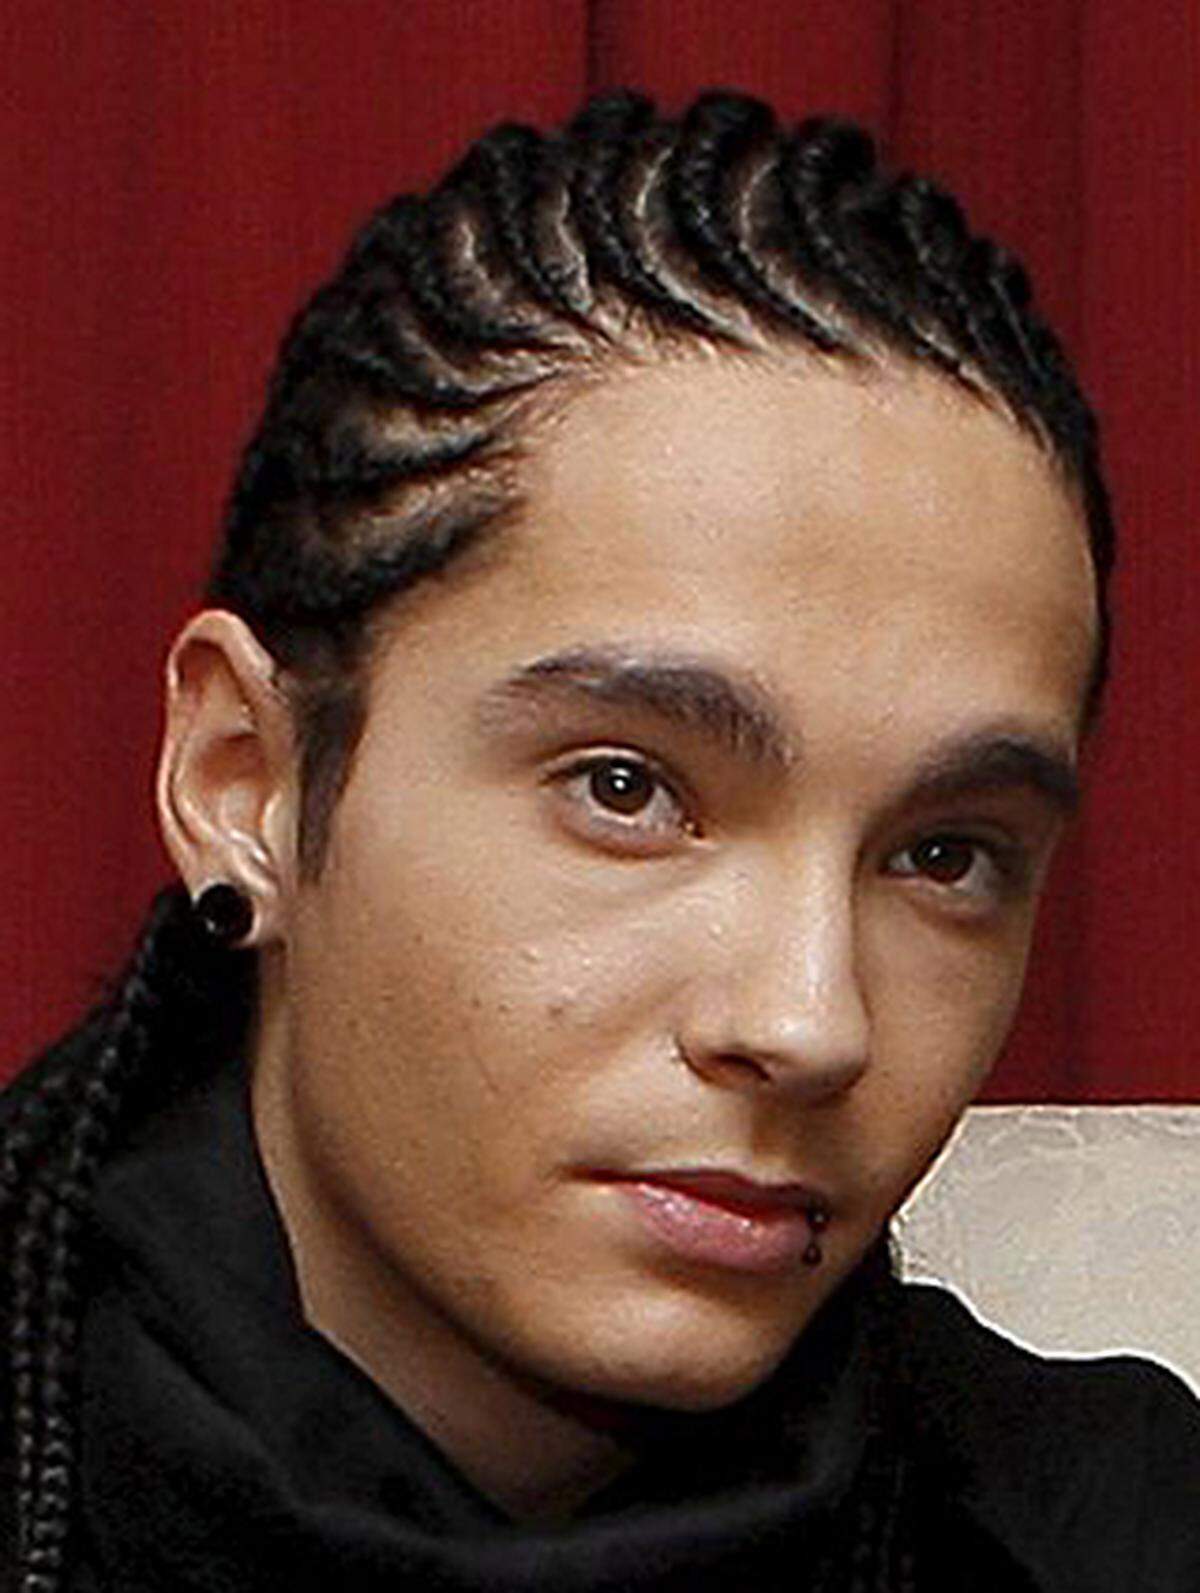 Der 20-jährige "Beau" von Tokio Hotel echauffiert sich öffentlich über seine Bettpartner: "Beim Sex sollten Frauen ruhig mal ein bisschen weniger erzählen. Schreien ist in Ordnung!".